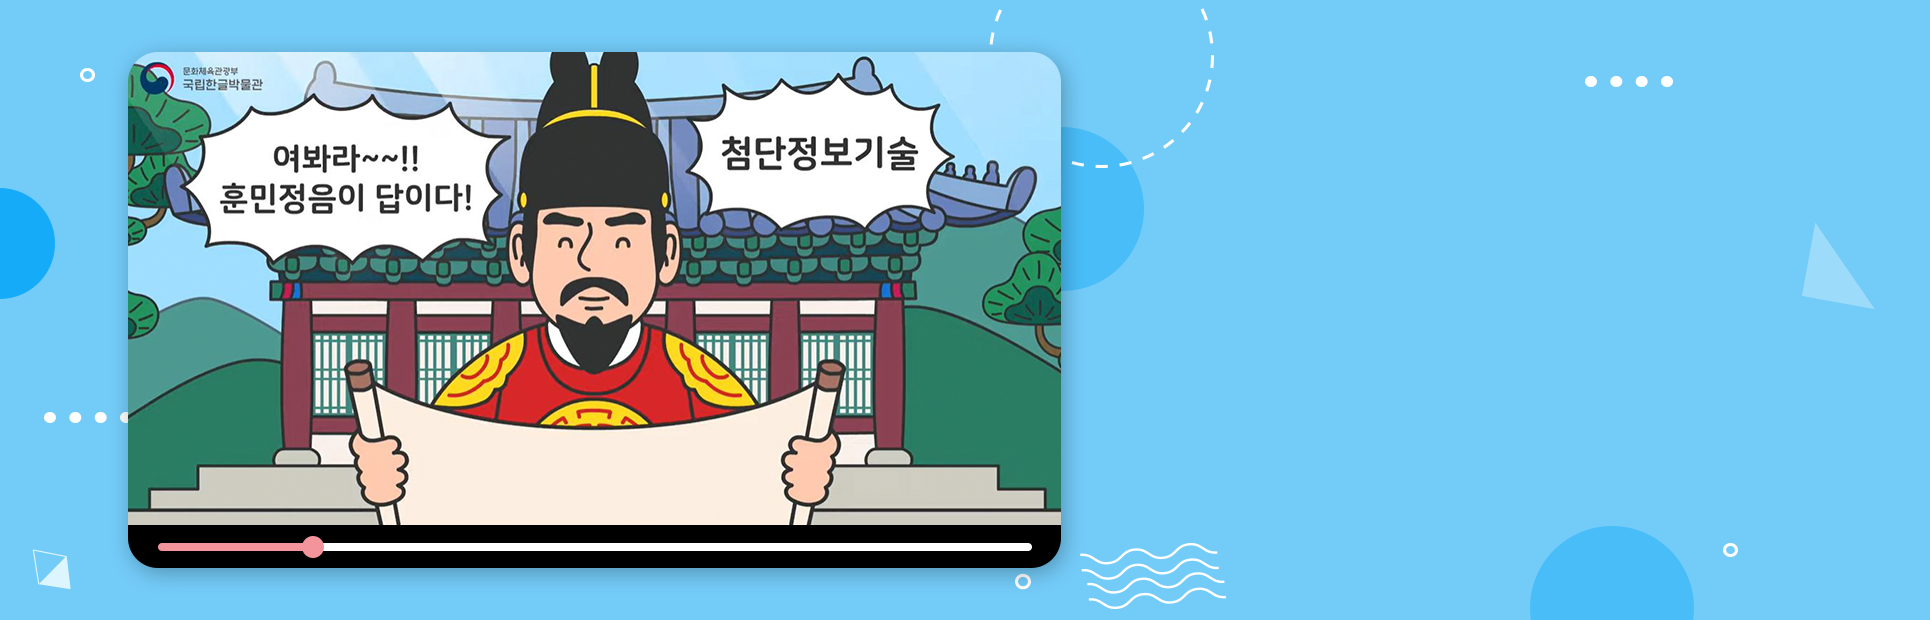 한국식 전통 건물 앞에 붉은색 곤룡포를 입은 세종대왕이 서 있다. 그는 미소지으며 양손으로 두루마리를 펼치고 있다. 그의 주변으로는 ‘여봐라~~!! 훈민정음이 답이다!’, ‘첨단정보기술!’이 적혀있다.